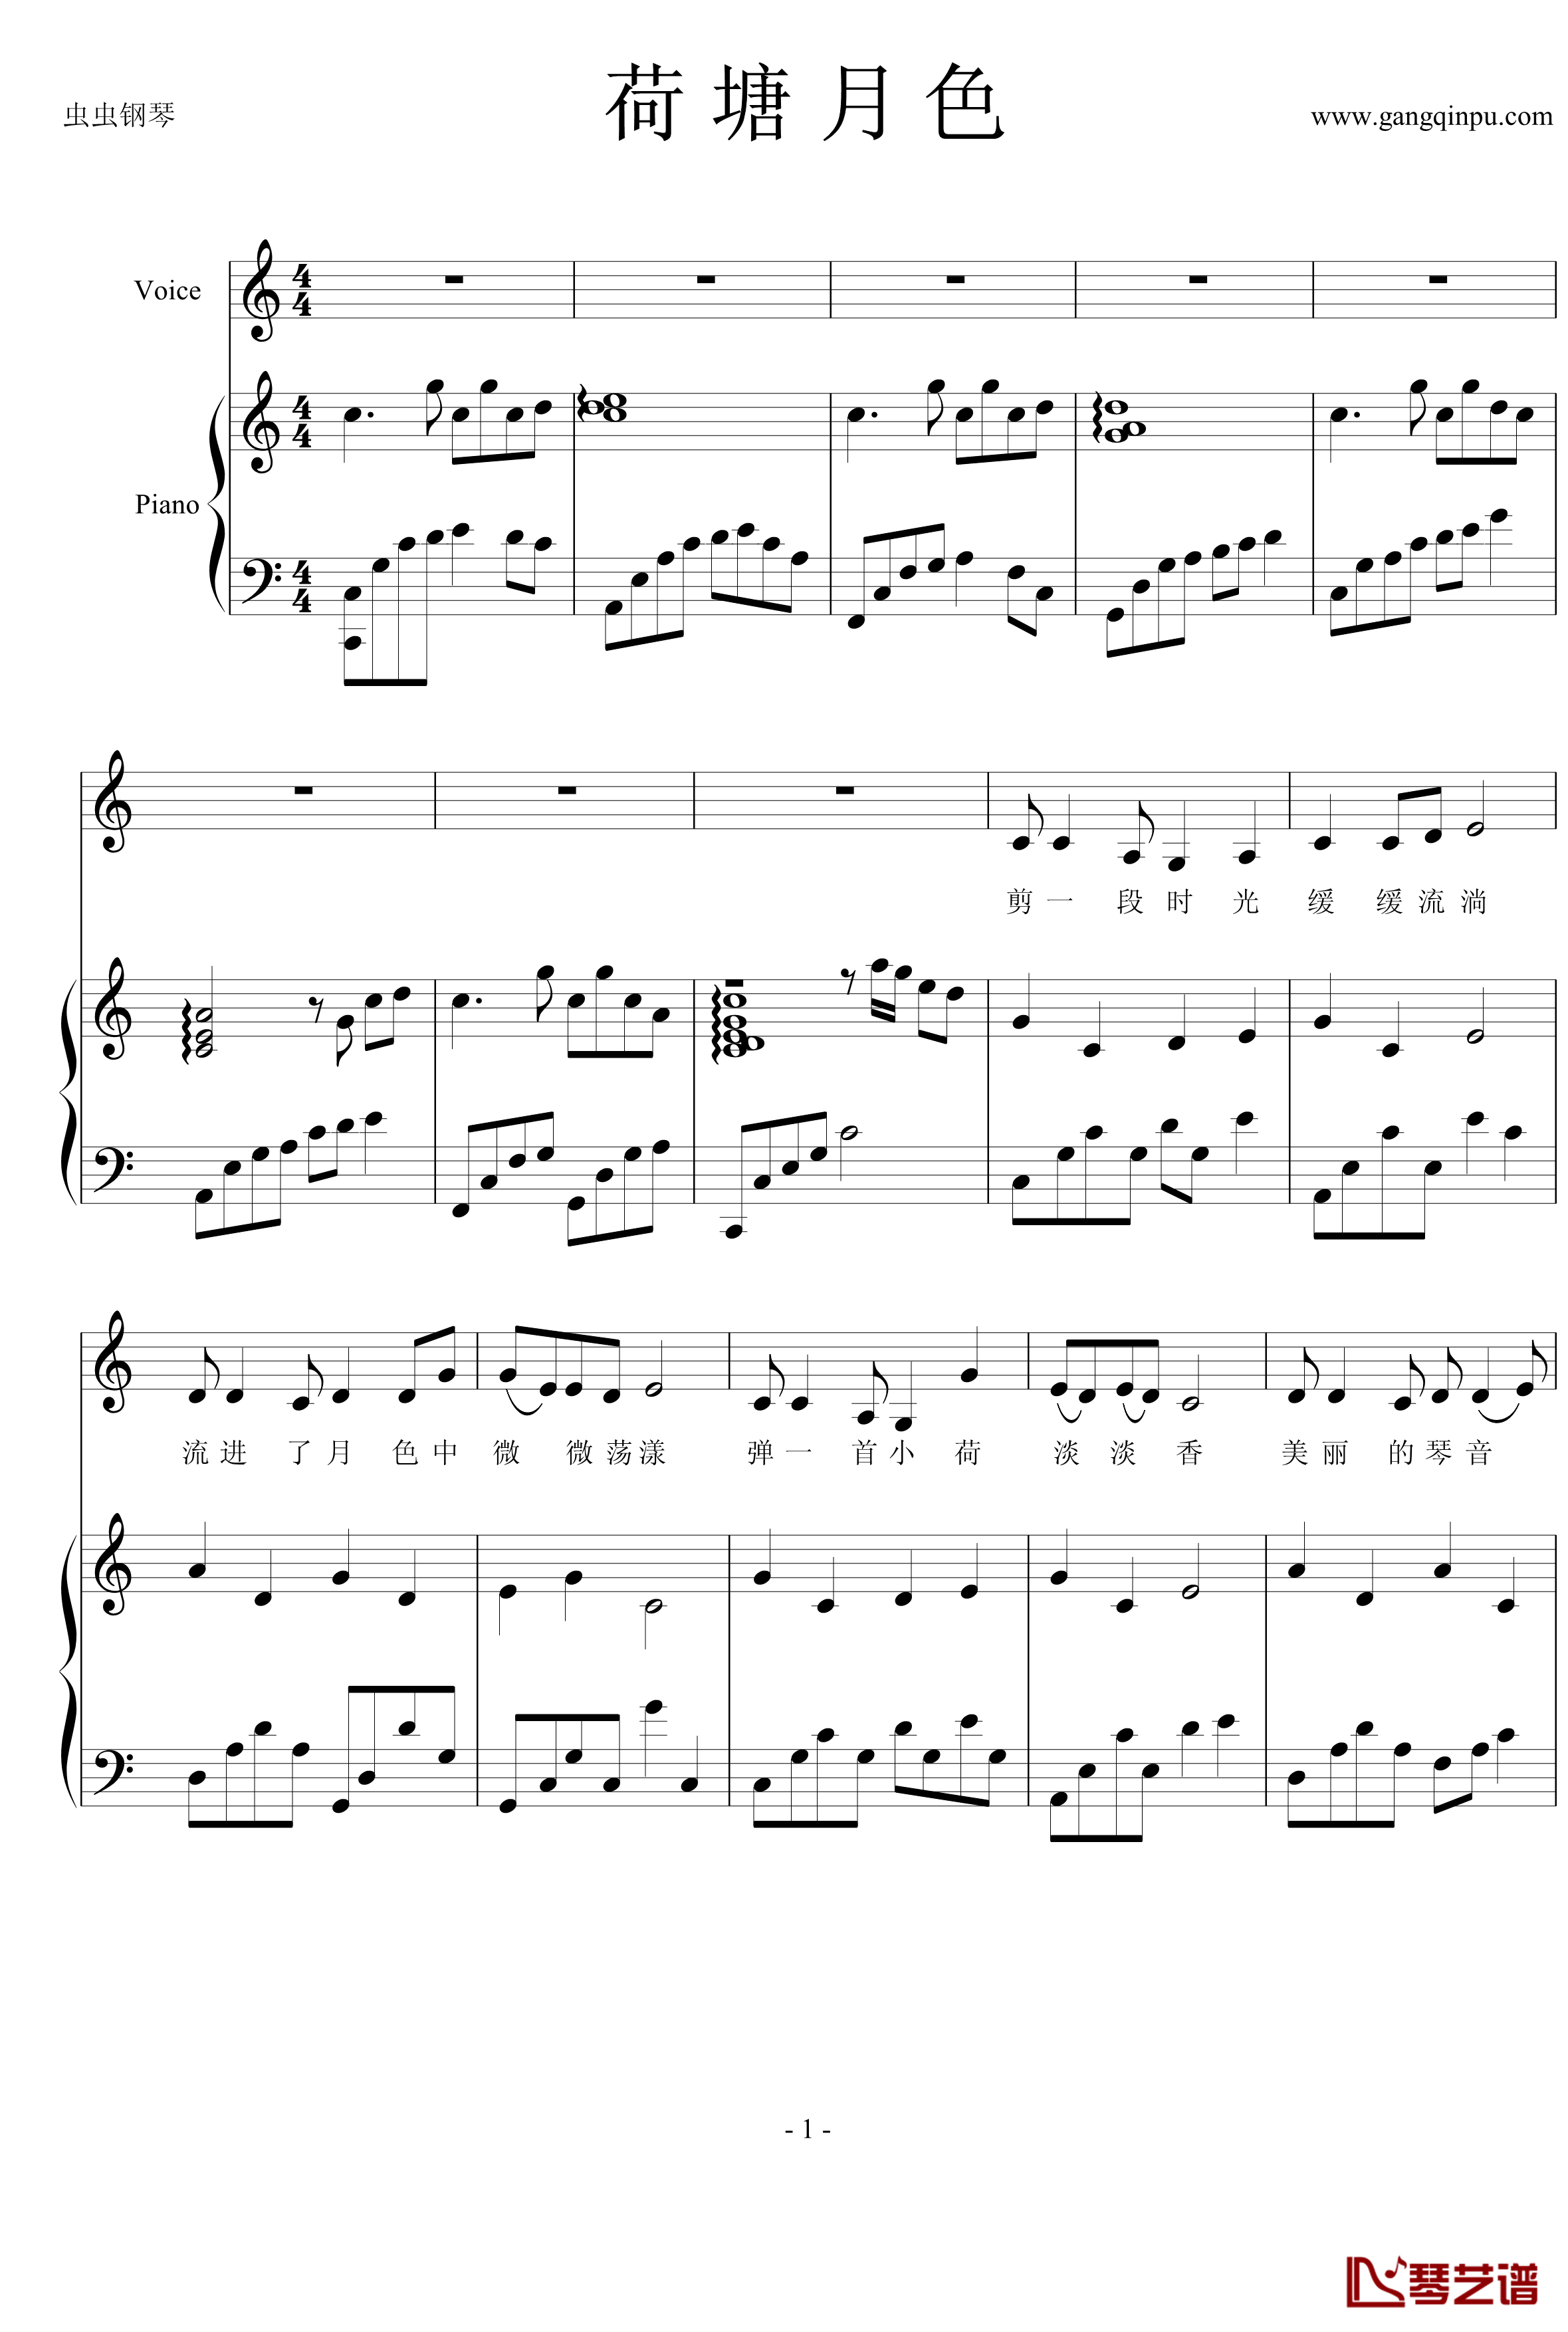 荷塘月色钢琴谱-钢伴弹唱-带歌词-凤凰传奇1